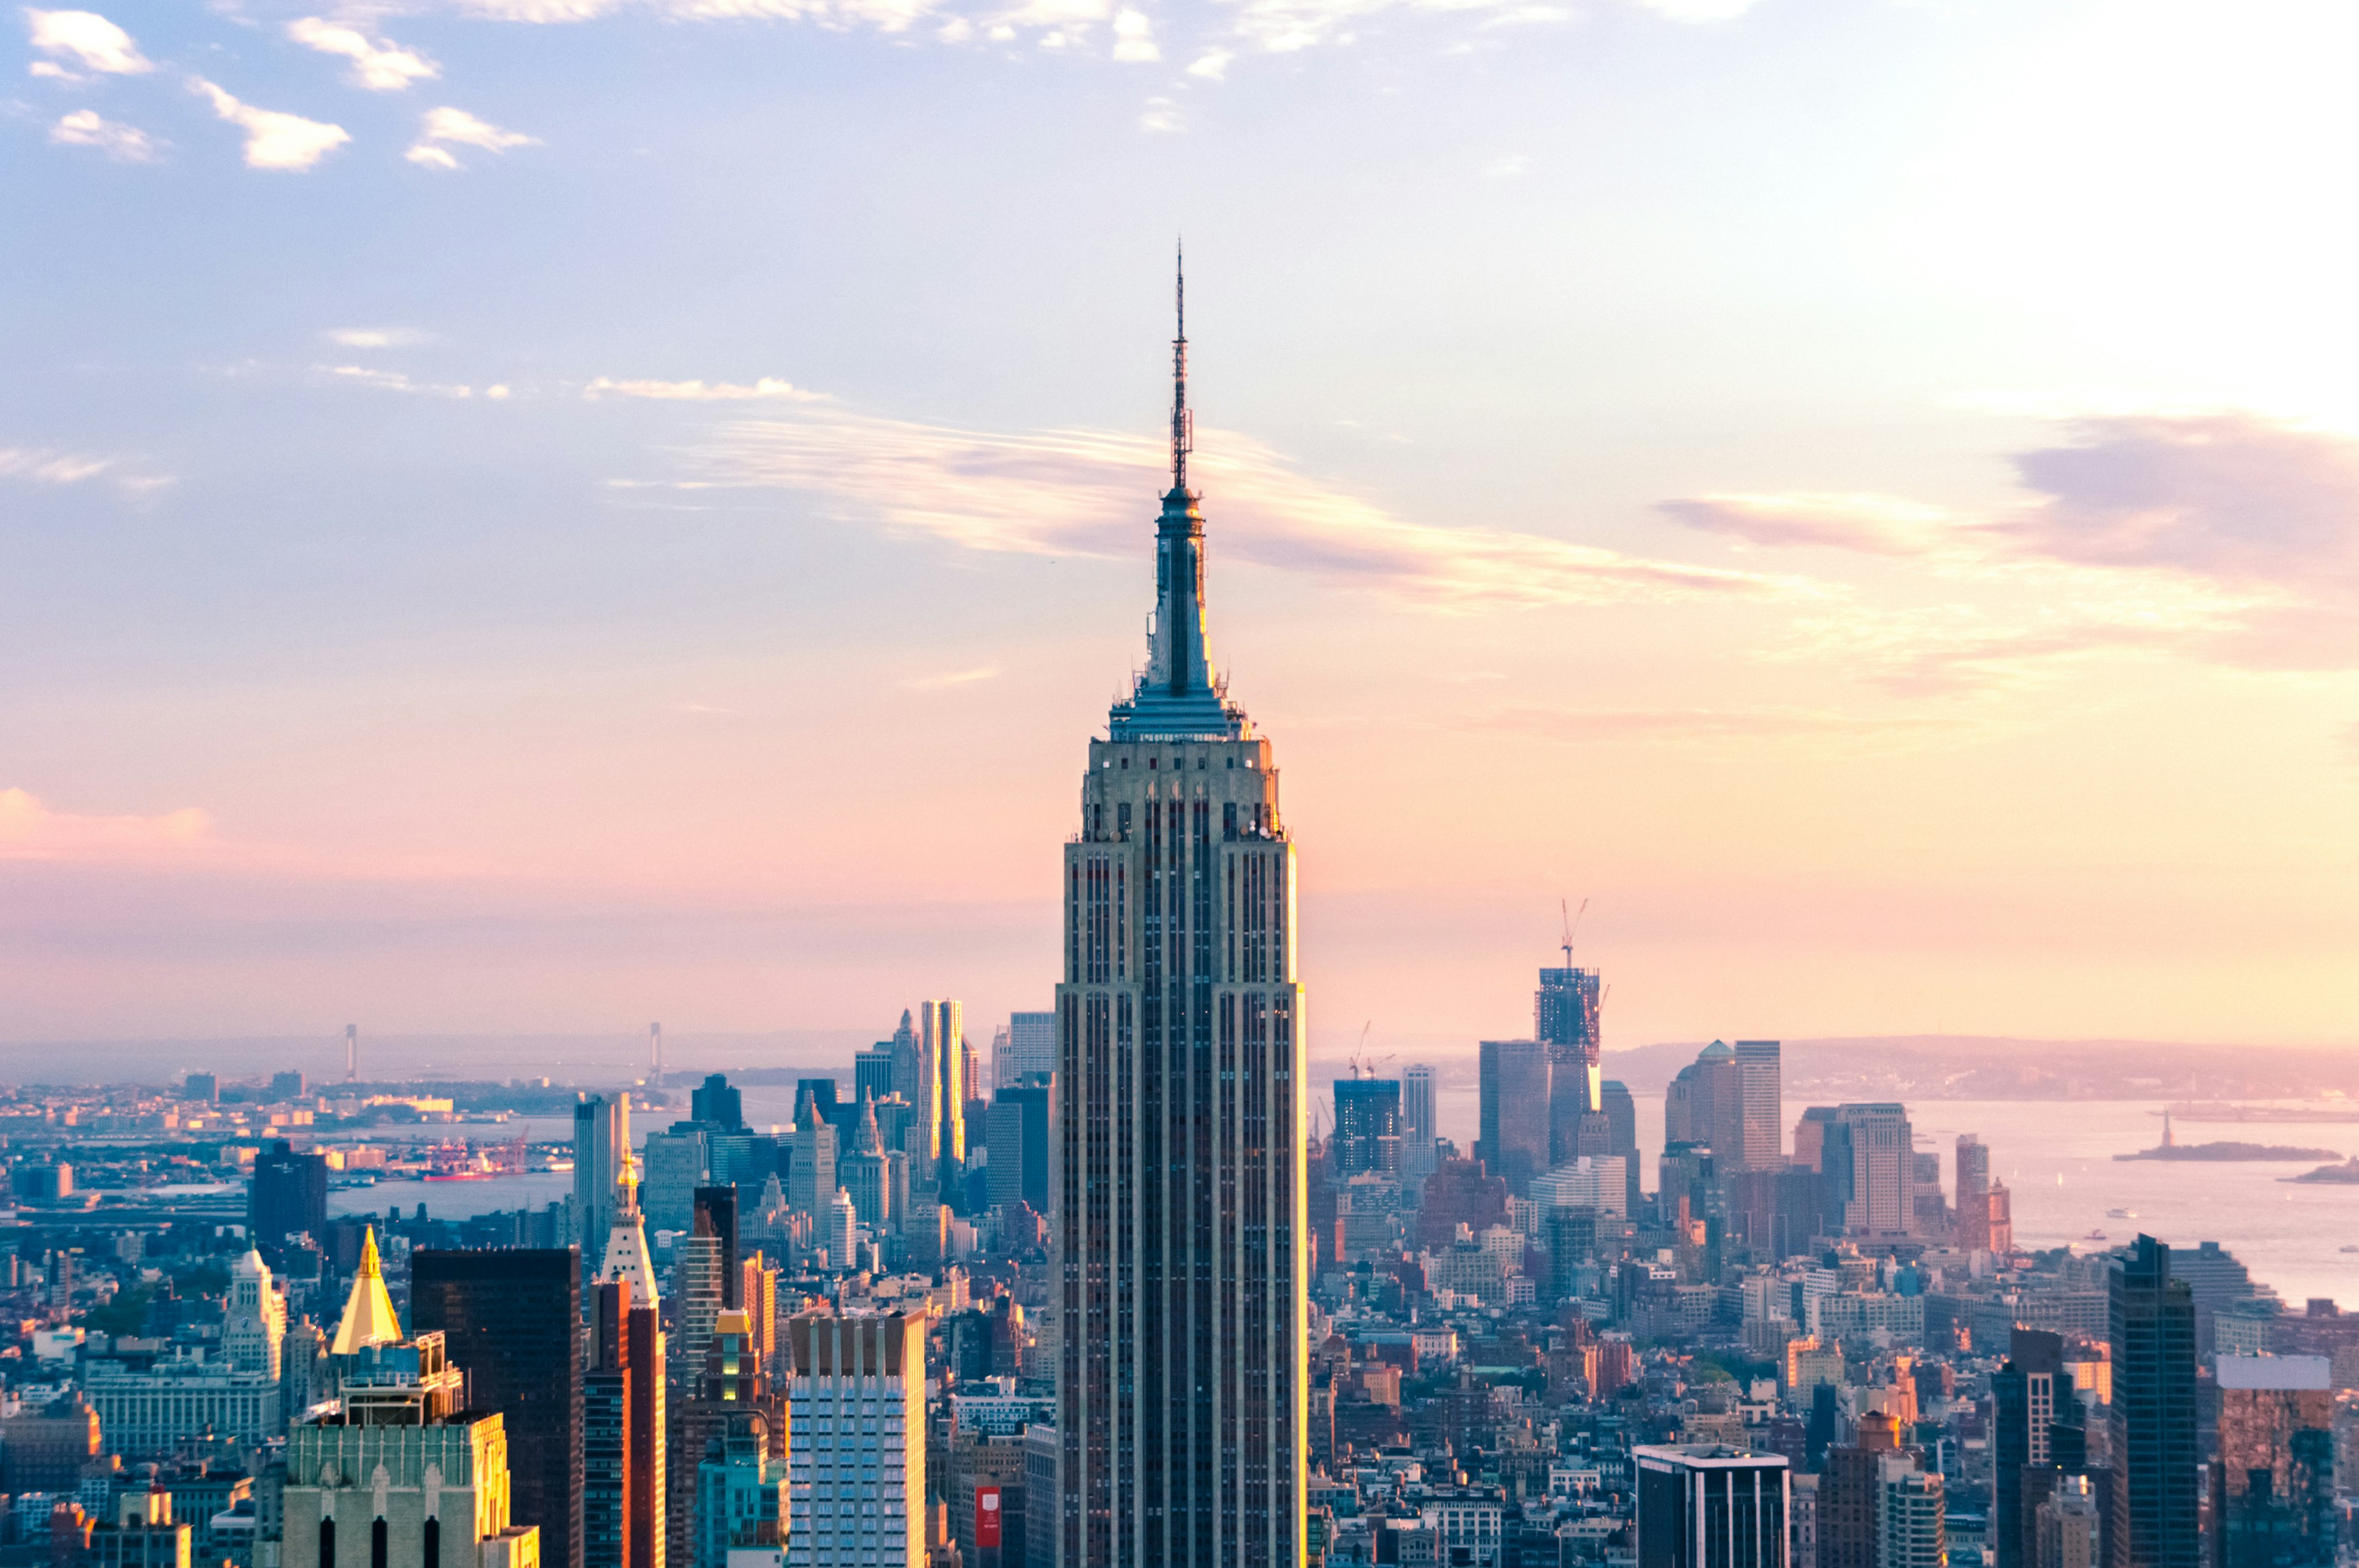 l'empire state building si staglia sul cielo di new york alla luce del tramonto, una delle viste da non perdere a new york